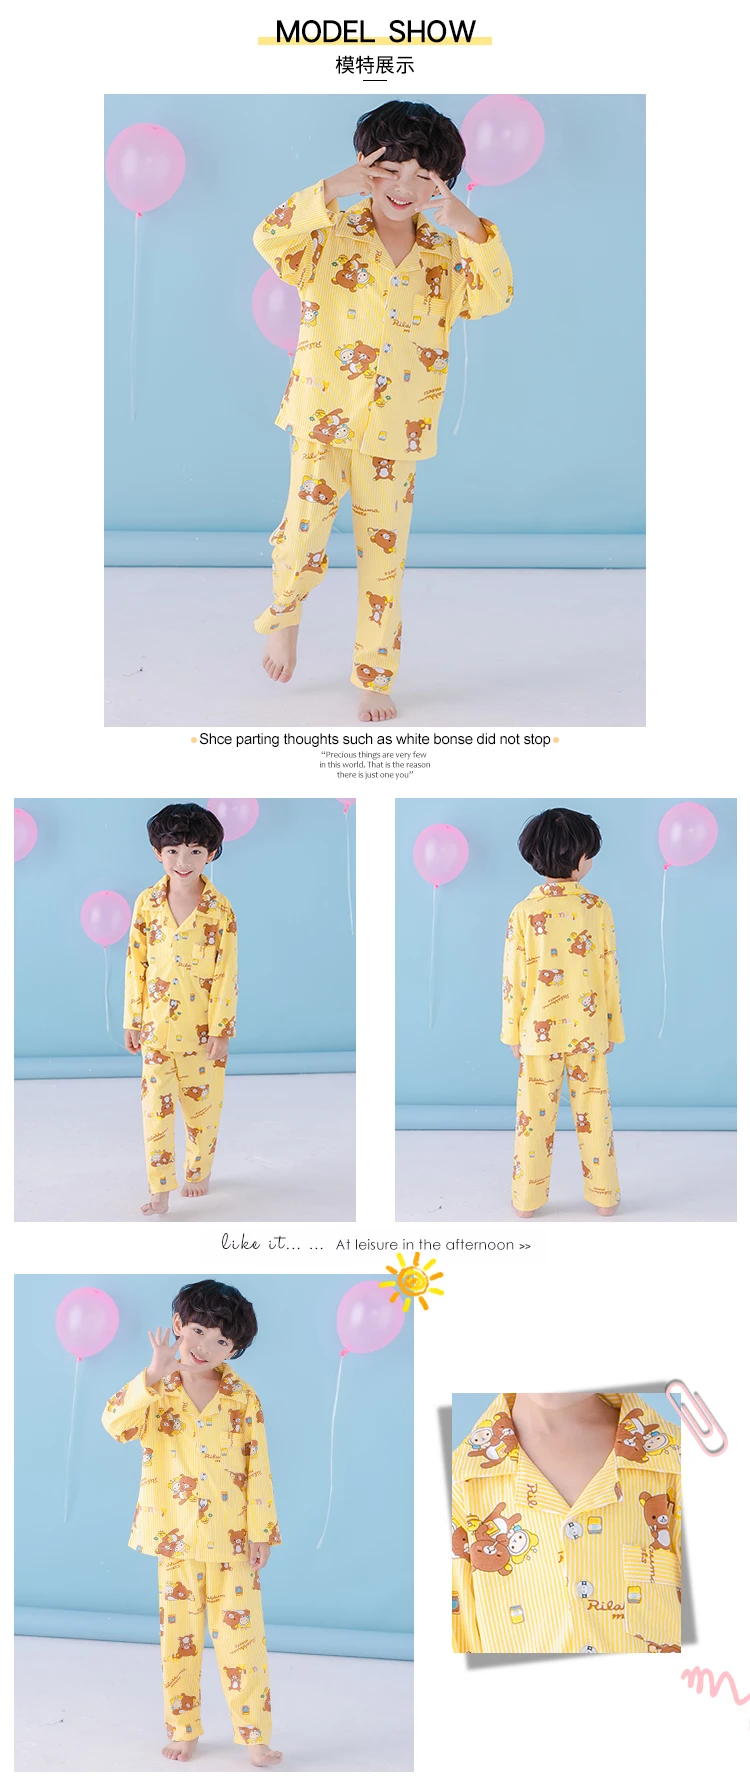 Весенний детский Пижамный костюм с лацканами Детский кардиган, детская одежда для сна хлопковый пижамный комплект принцессы для девочек, домашняя одежда для мальчиков